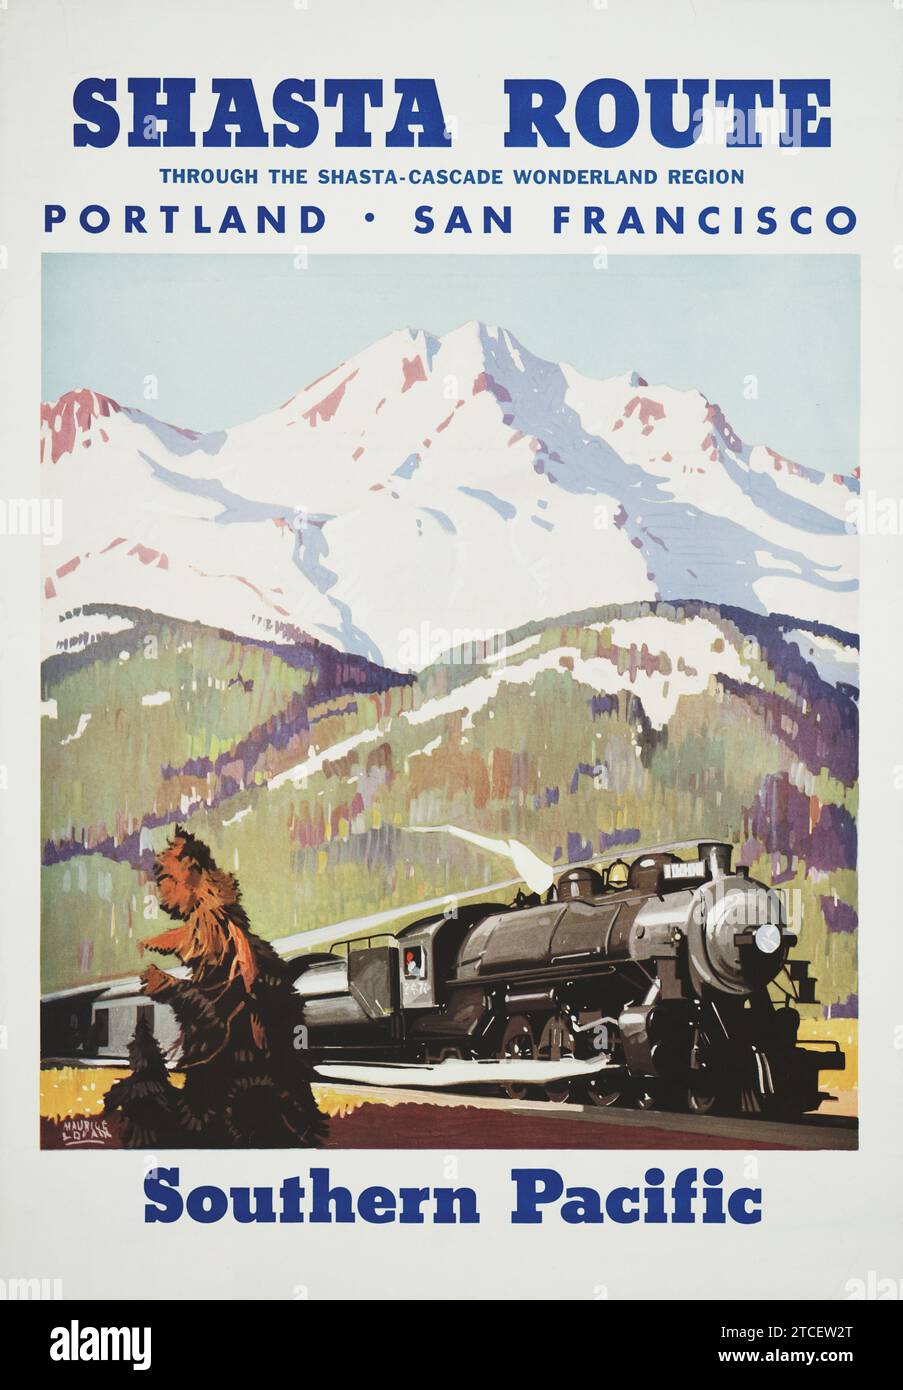 Percorso Shasta attraverso la regione delle meraviglie di Shasta-Cascade nel Pacifico meridionale - opere d'arte di Maurice Logan, anni '1950 - una locomotiva a vapore Foto Stock